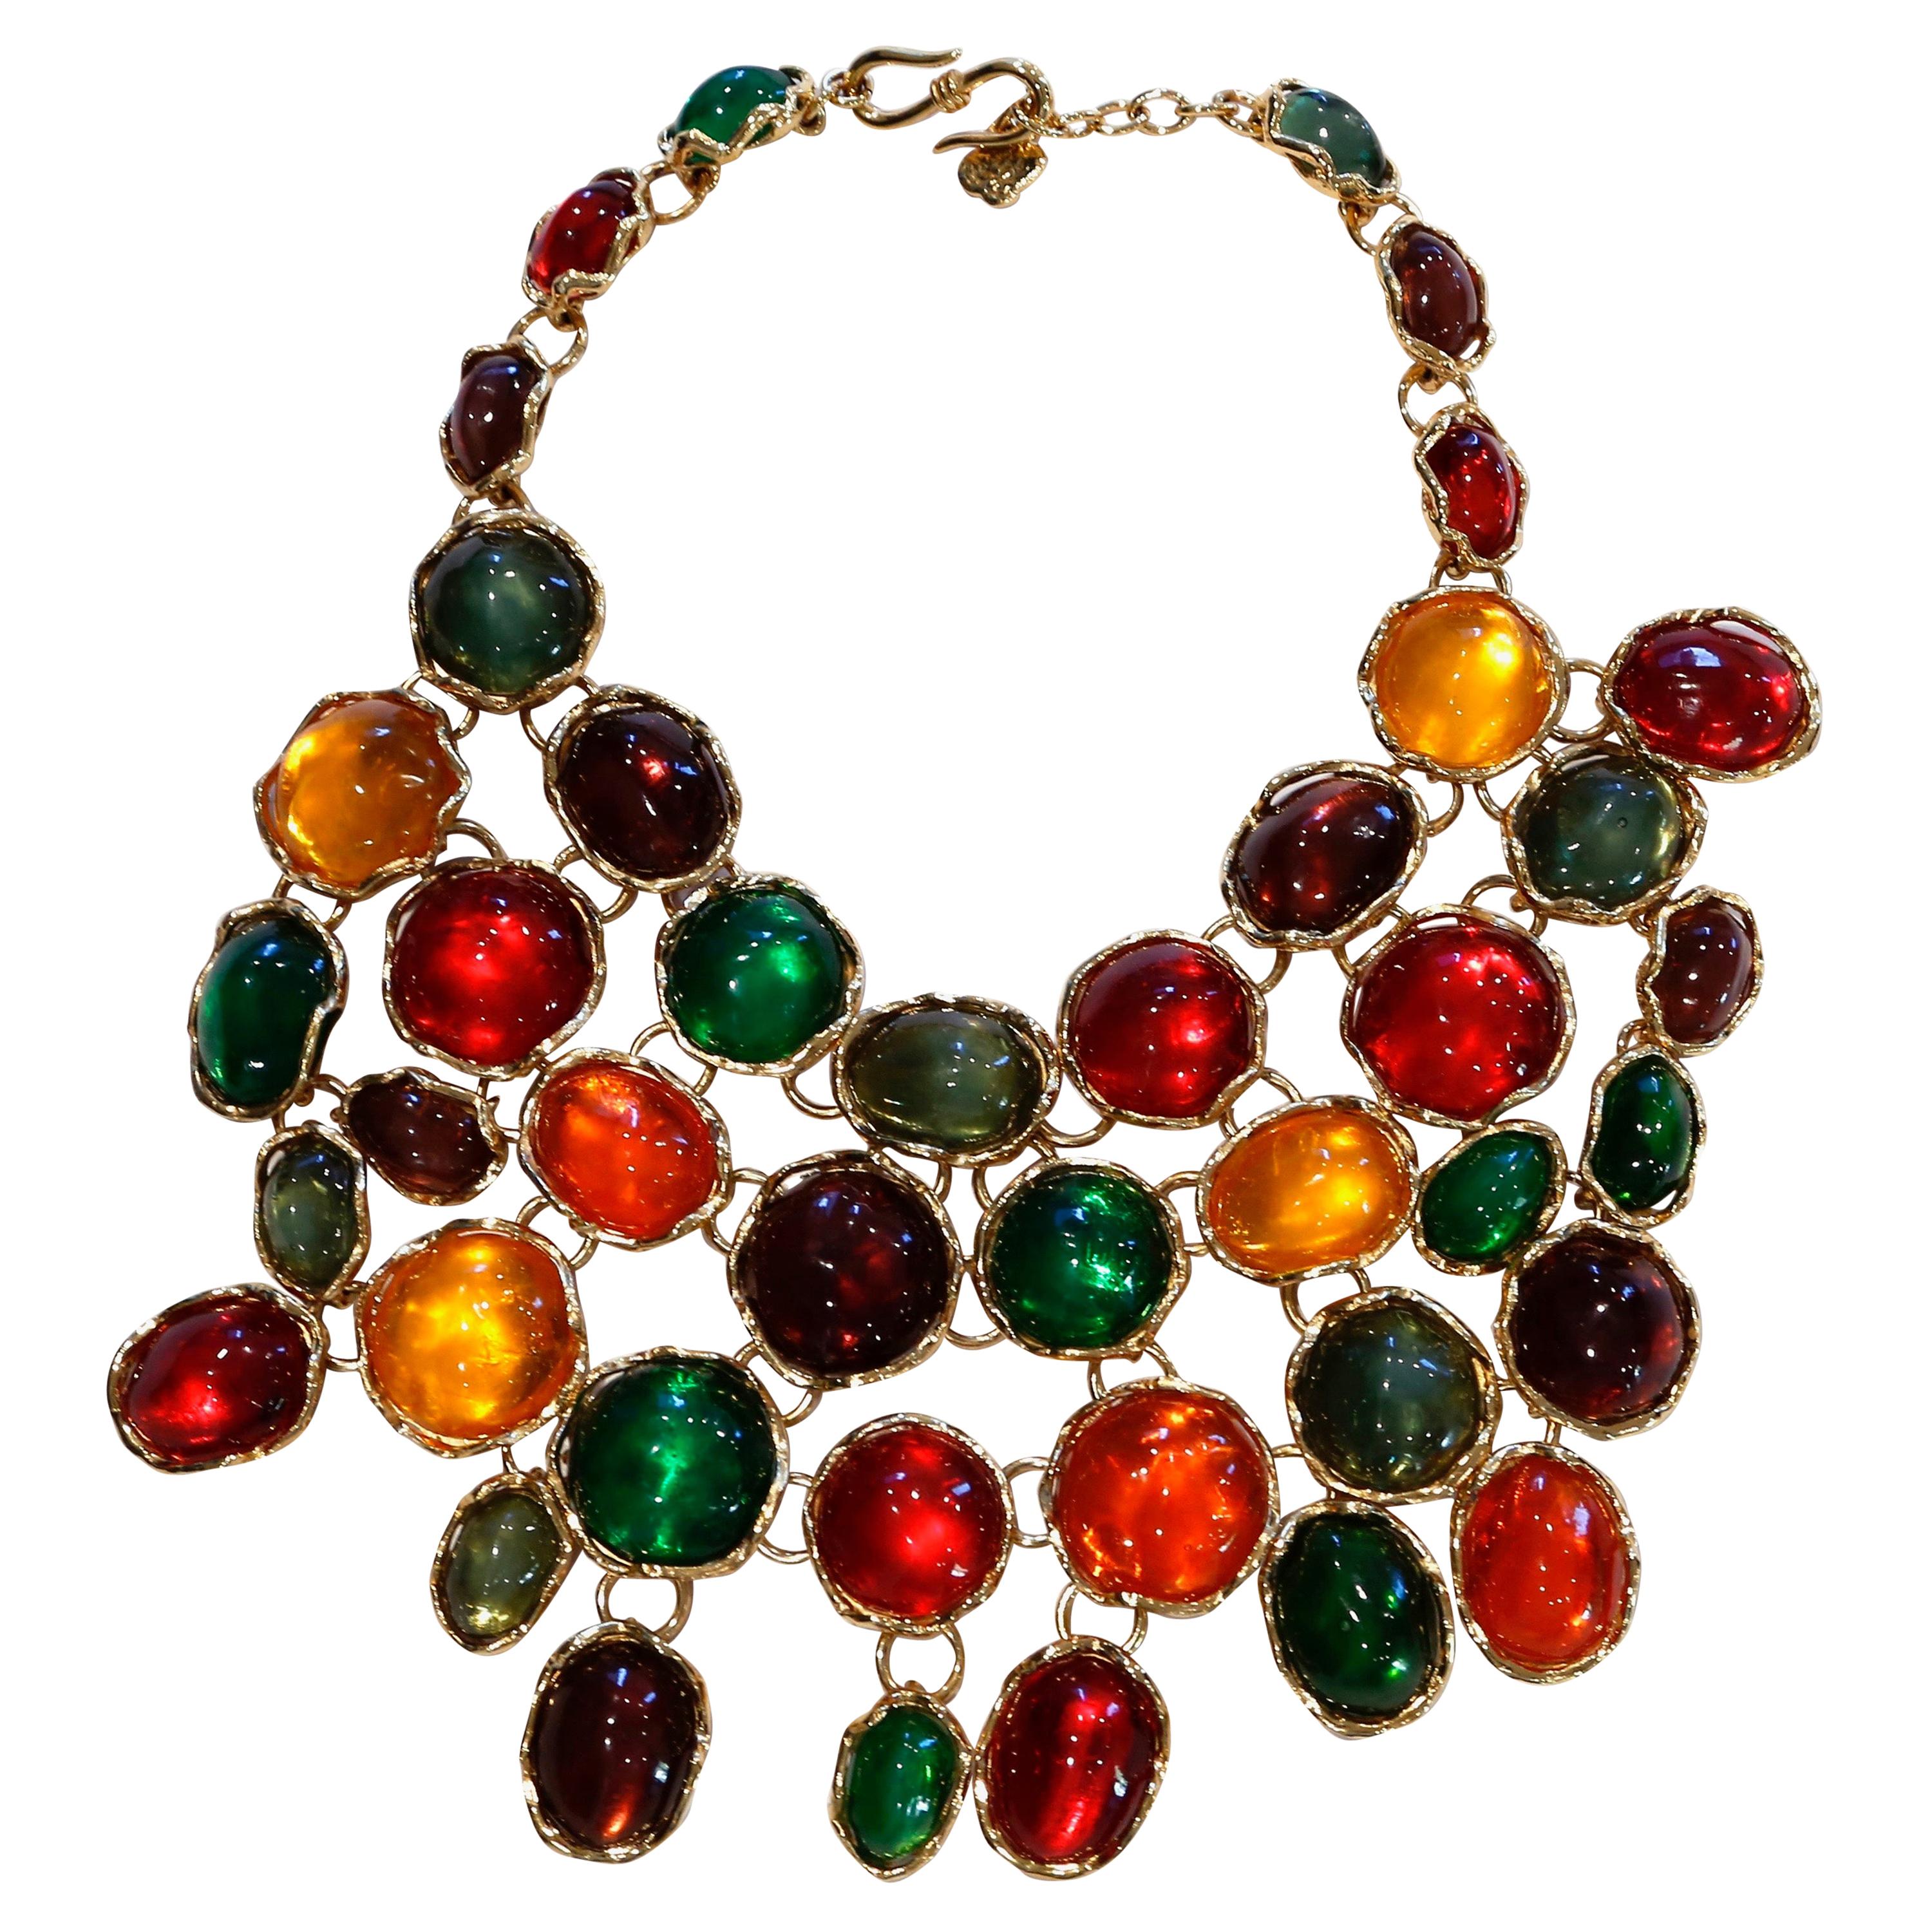 1989 YVES SAINT LAURENT haute couture poured glass bib necklace